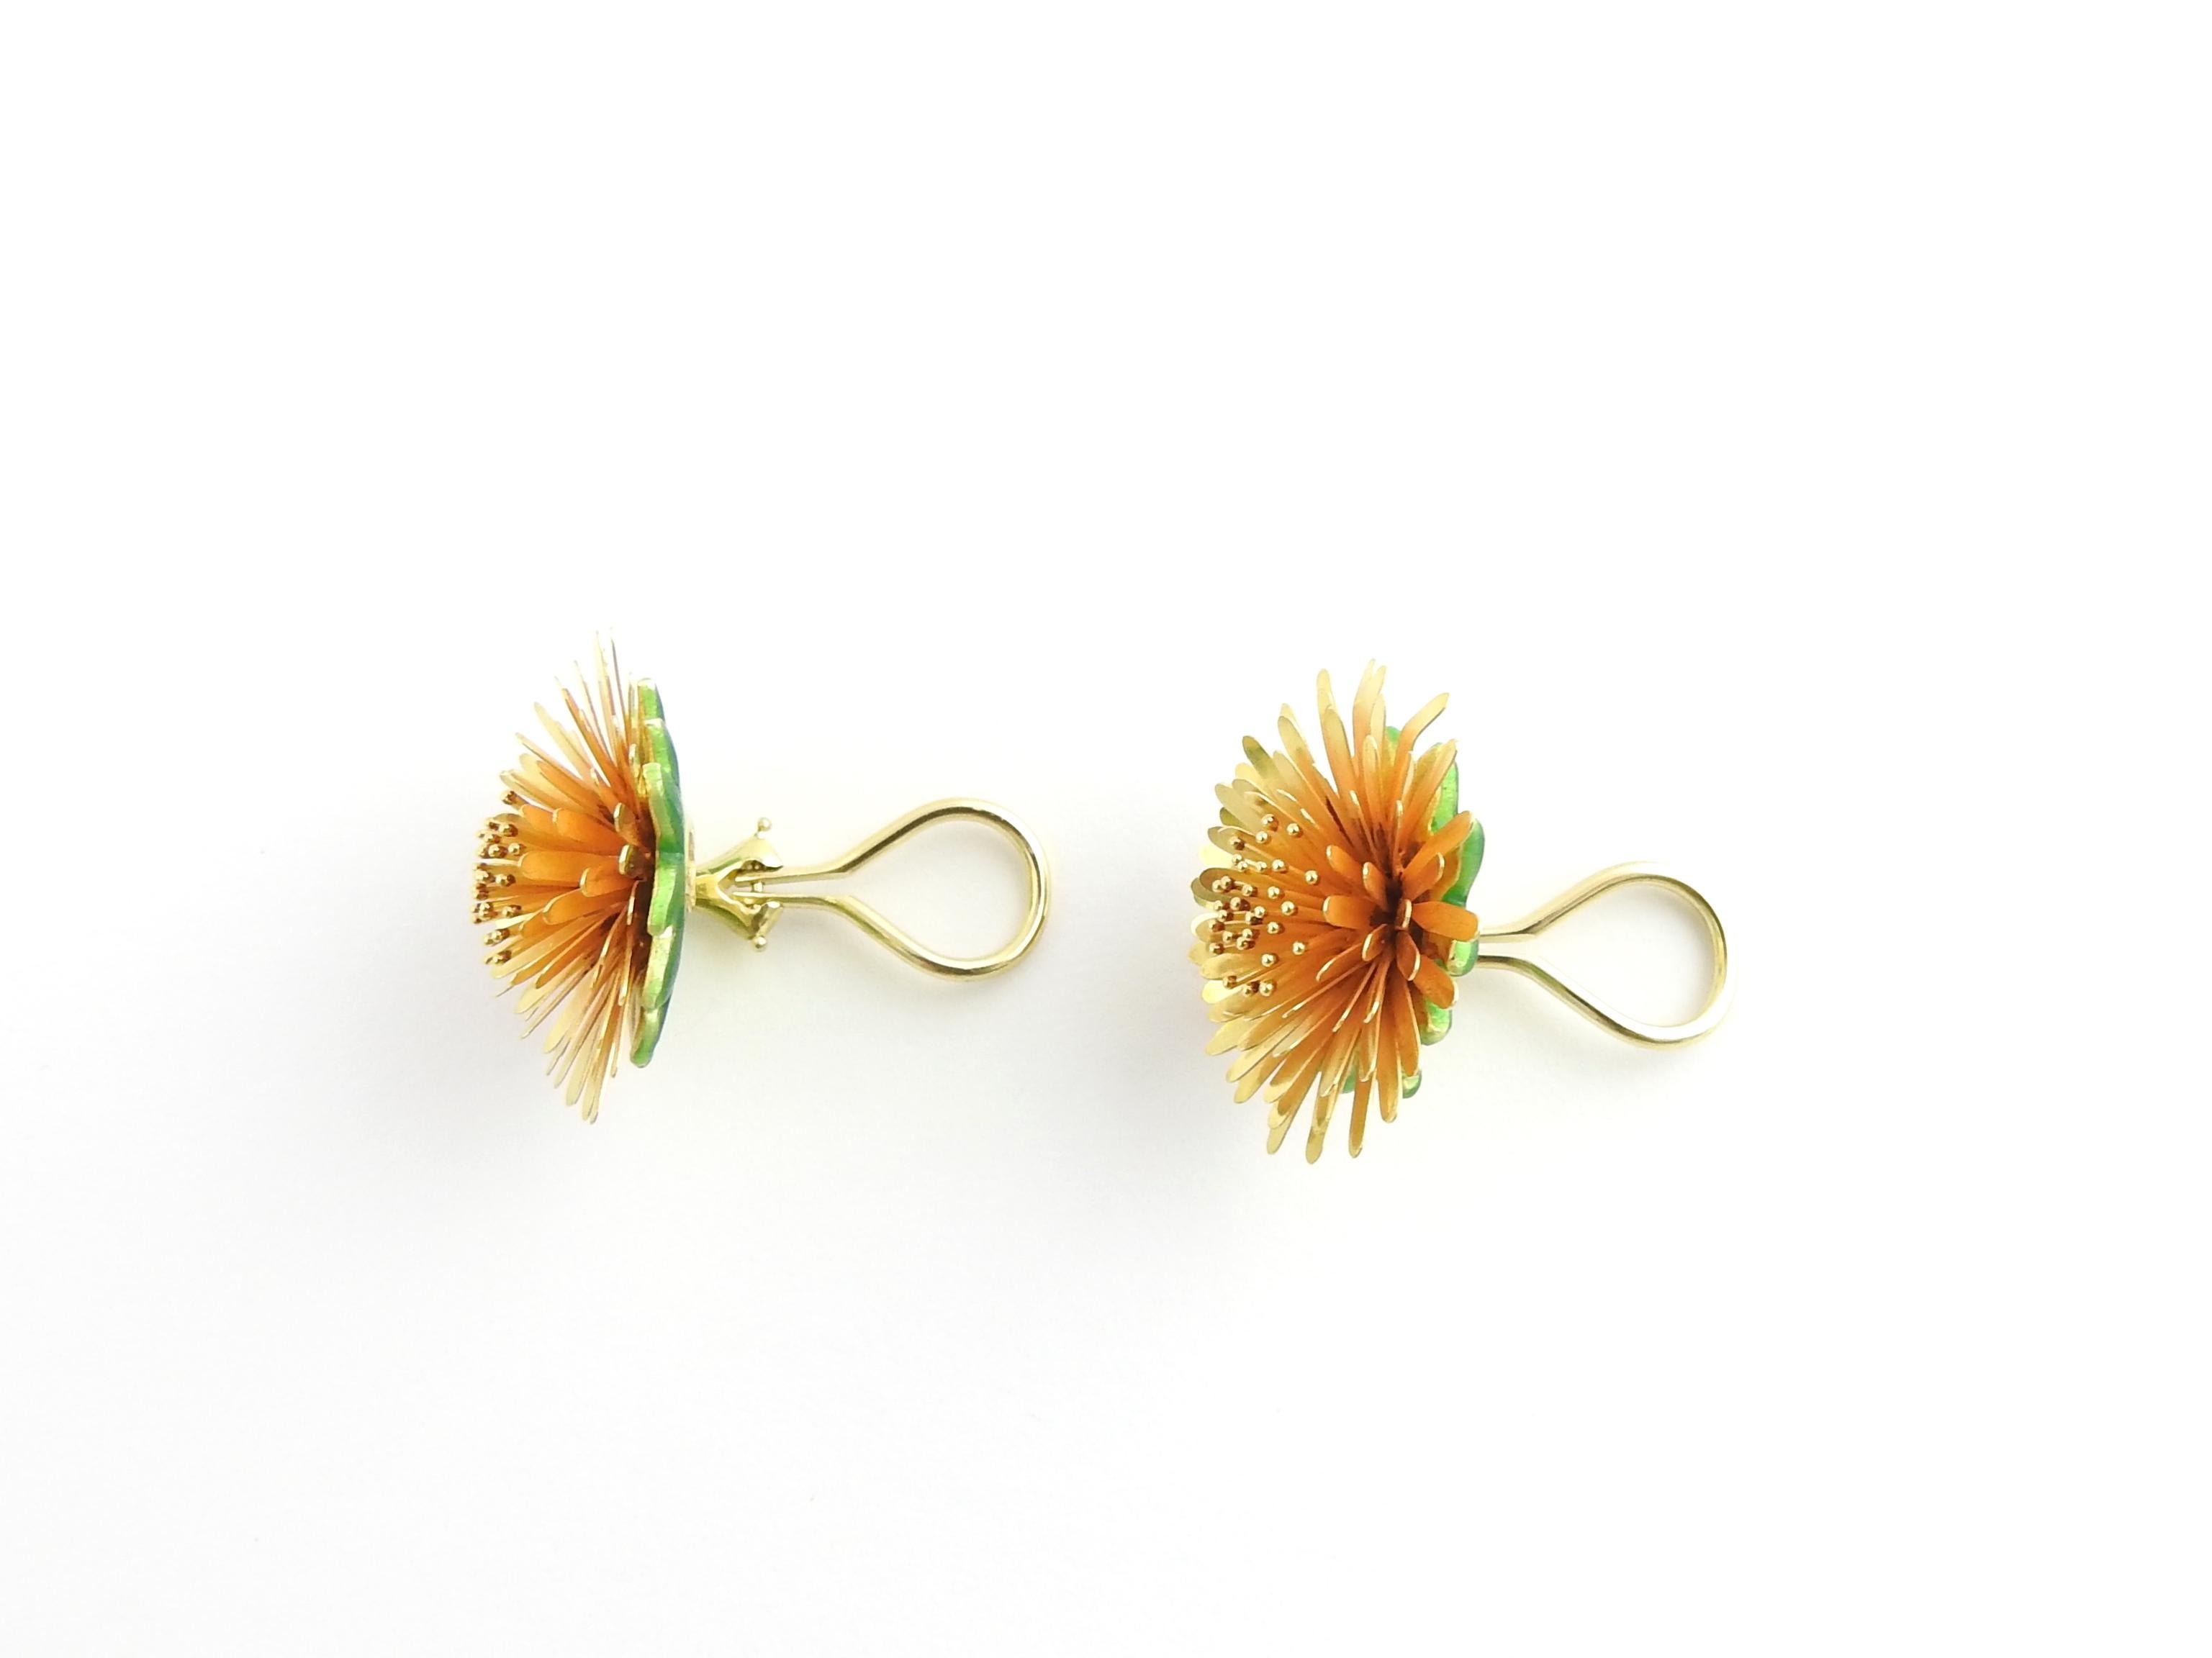 Women's McTeigue & McClelland 18 Karat Gold Dandelion Earrings with Green Enamel Back